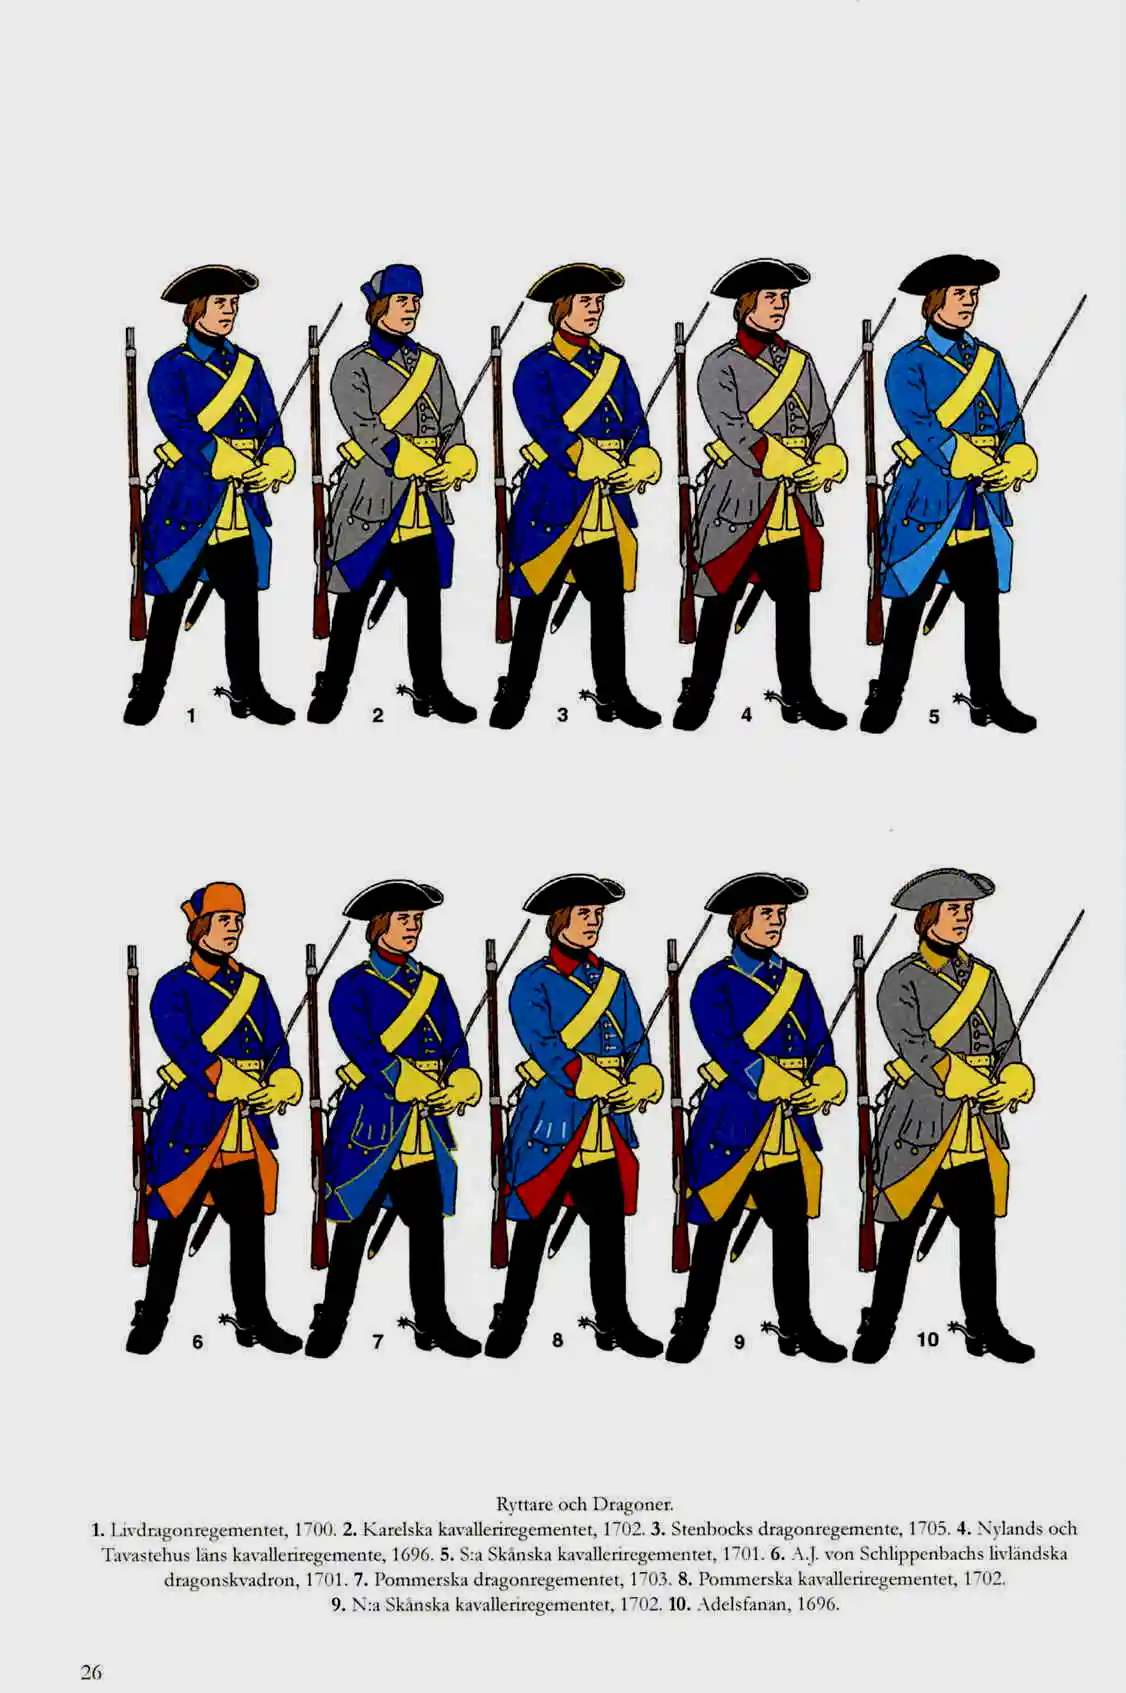 第二次北欧战争时的瑞典骑兵/龙骑兵服装，三角帽取代了头盔，